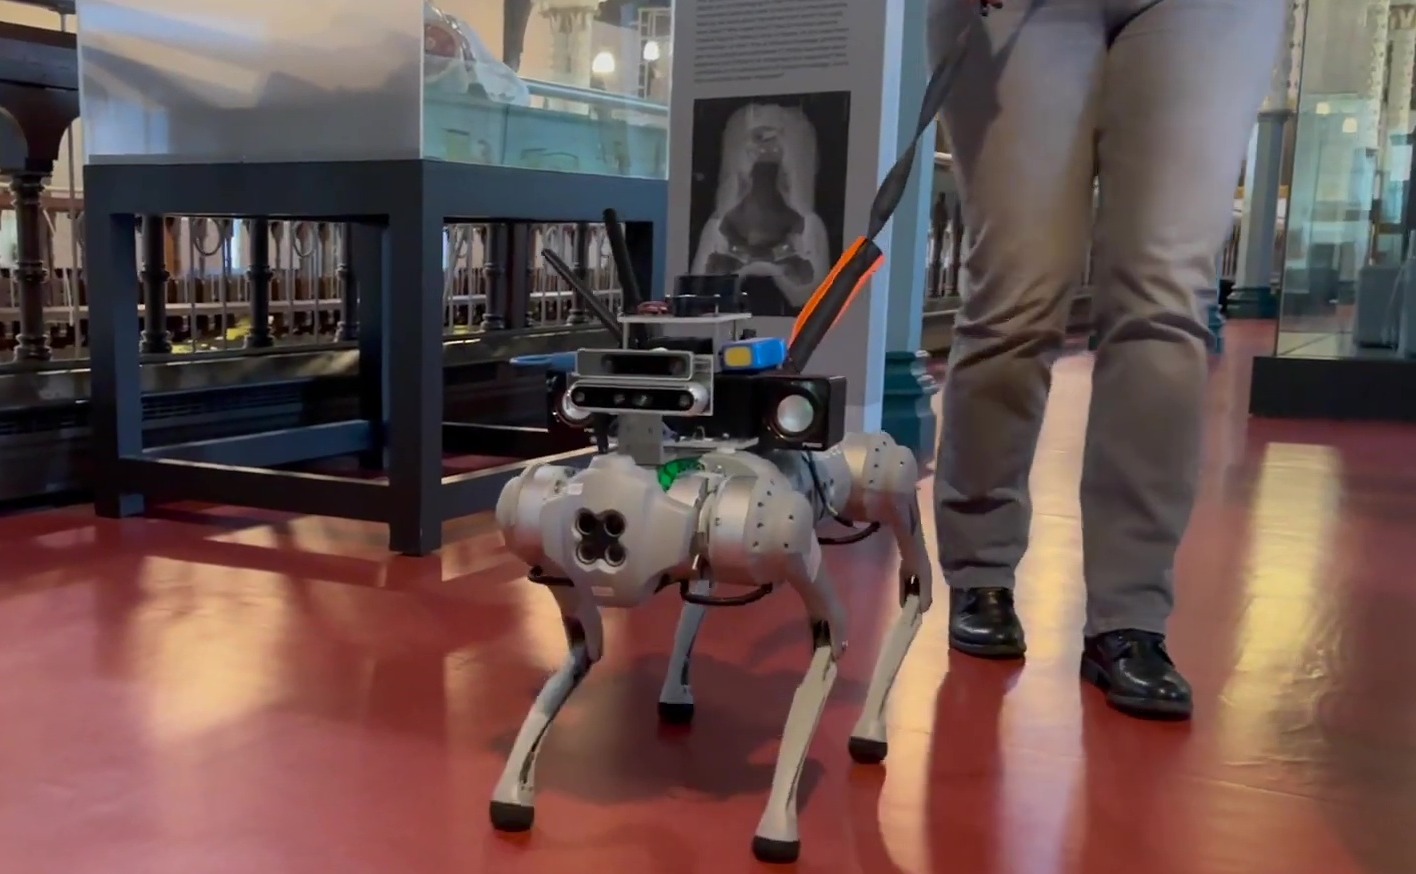 Der Roboterhund wurde darauf trainiert, Hindernissen auszuweichen und mit seinem Besitzer zu sprechen